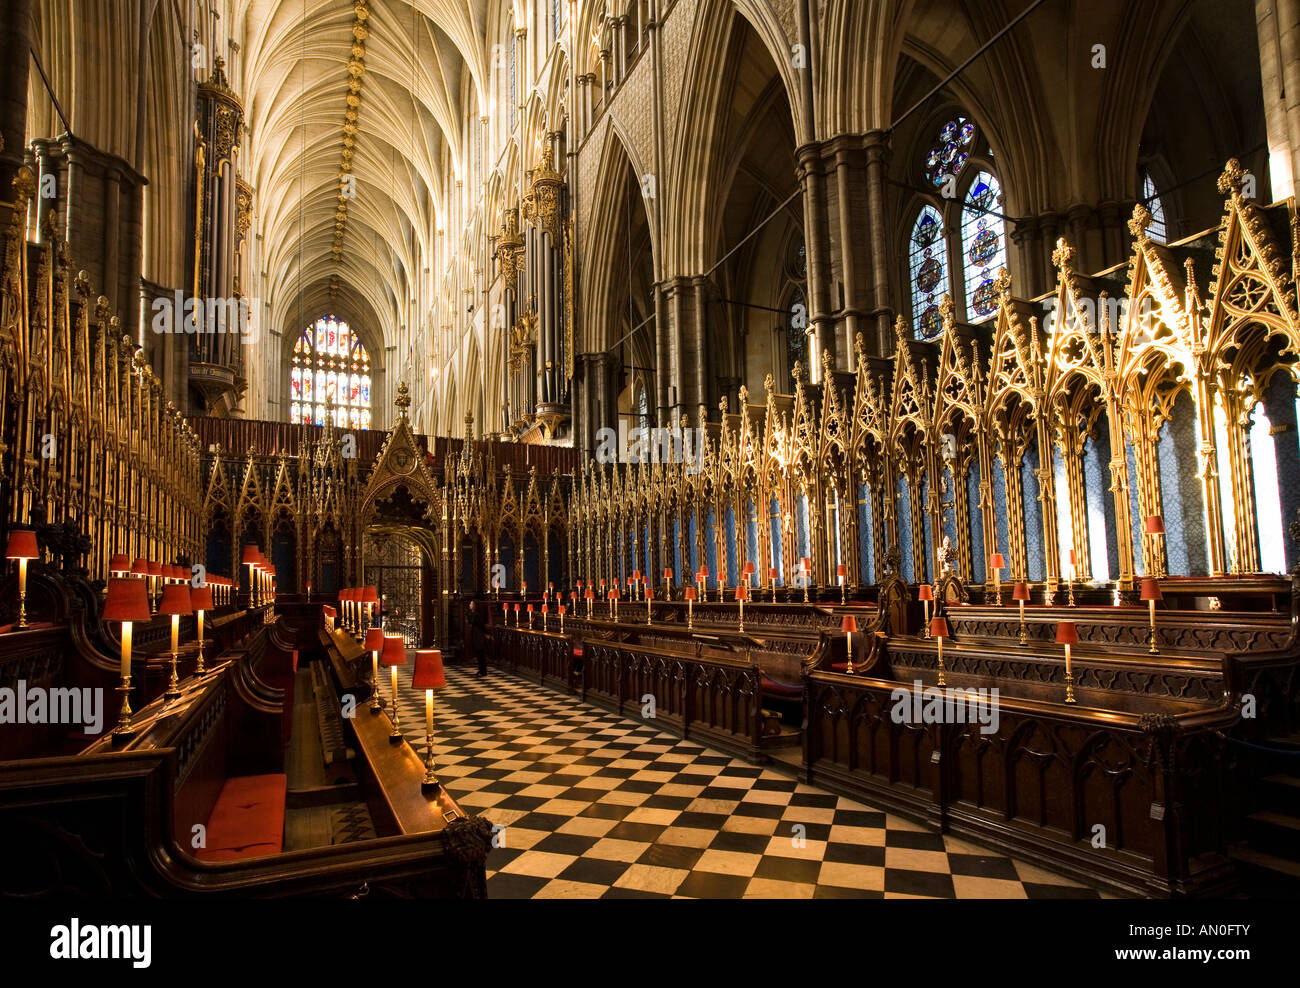 La Abadía de Westminster Londres Reino Unido El Quire decorativa gótica victoriana tallada sillería de roble Foto de stock